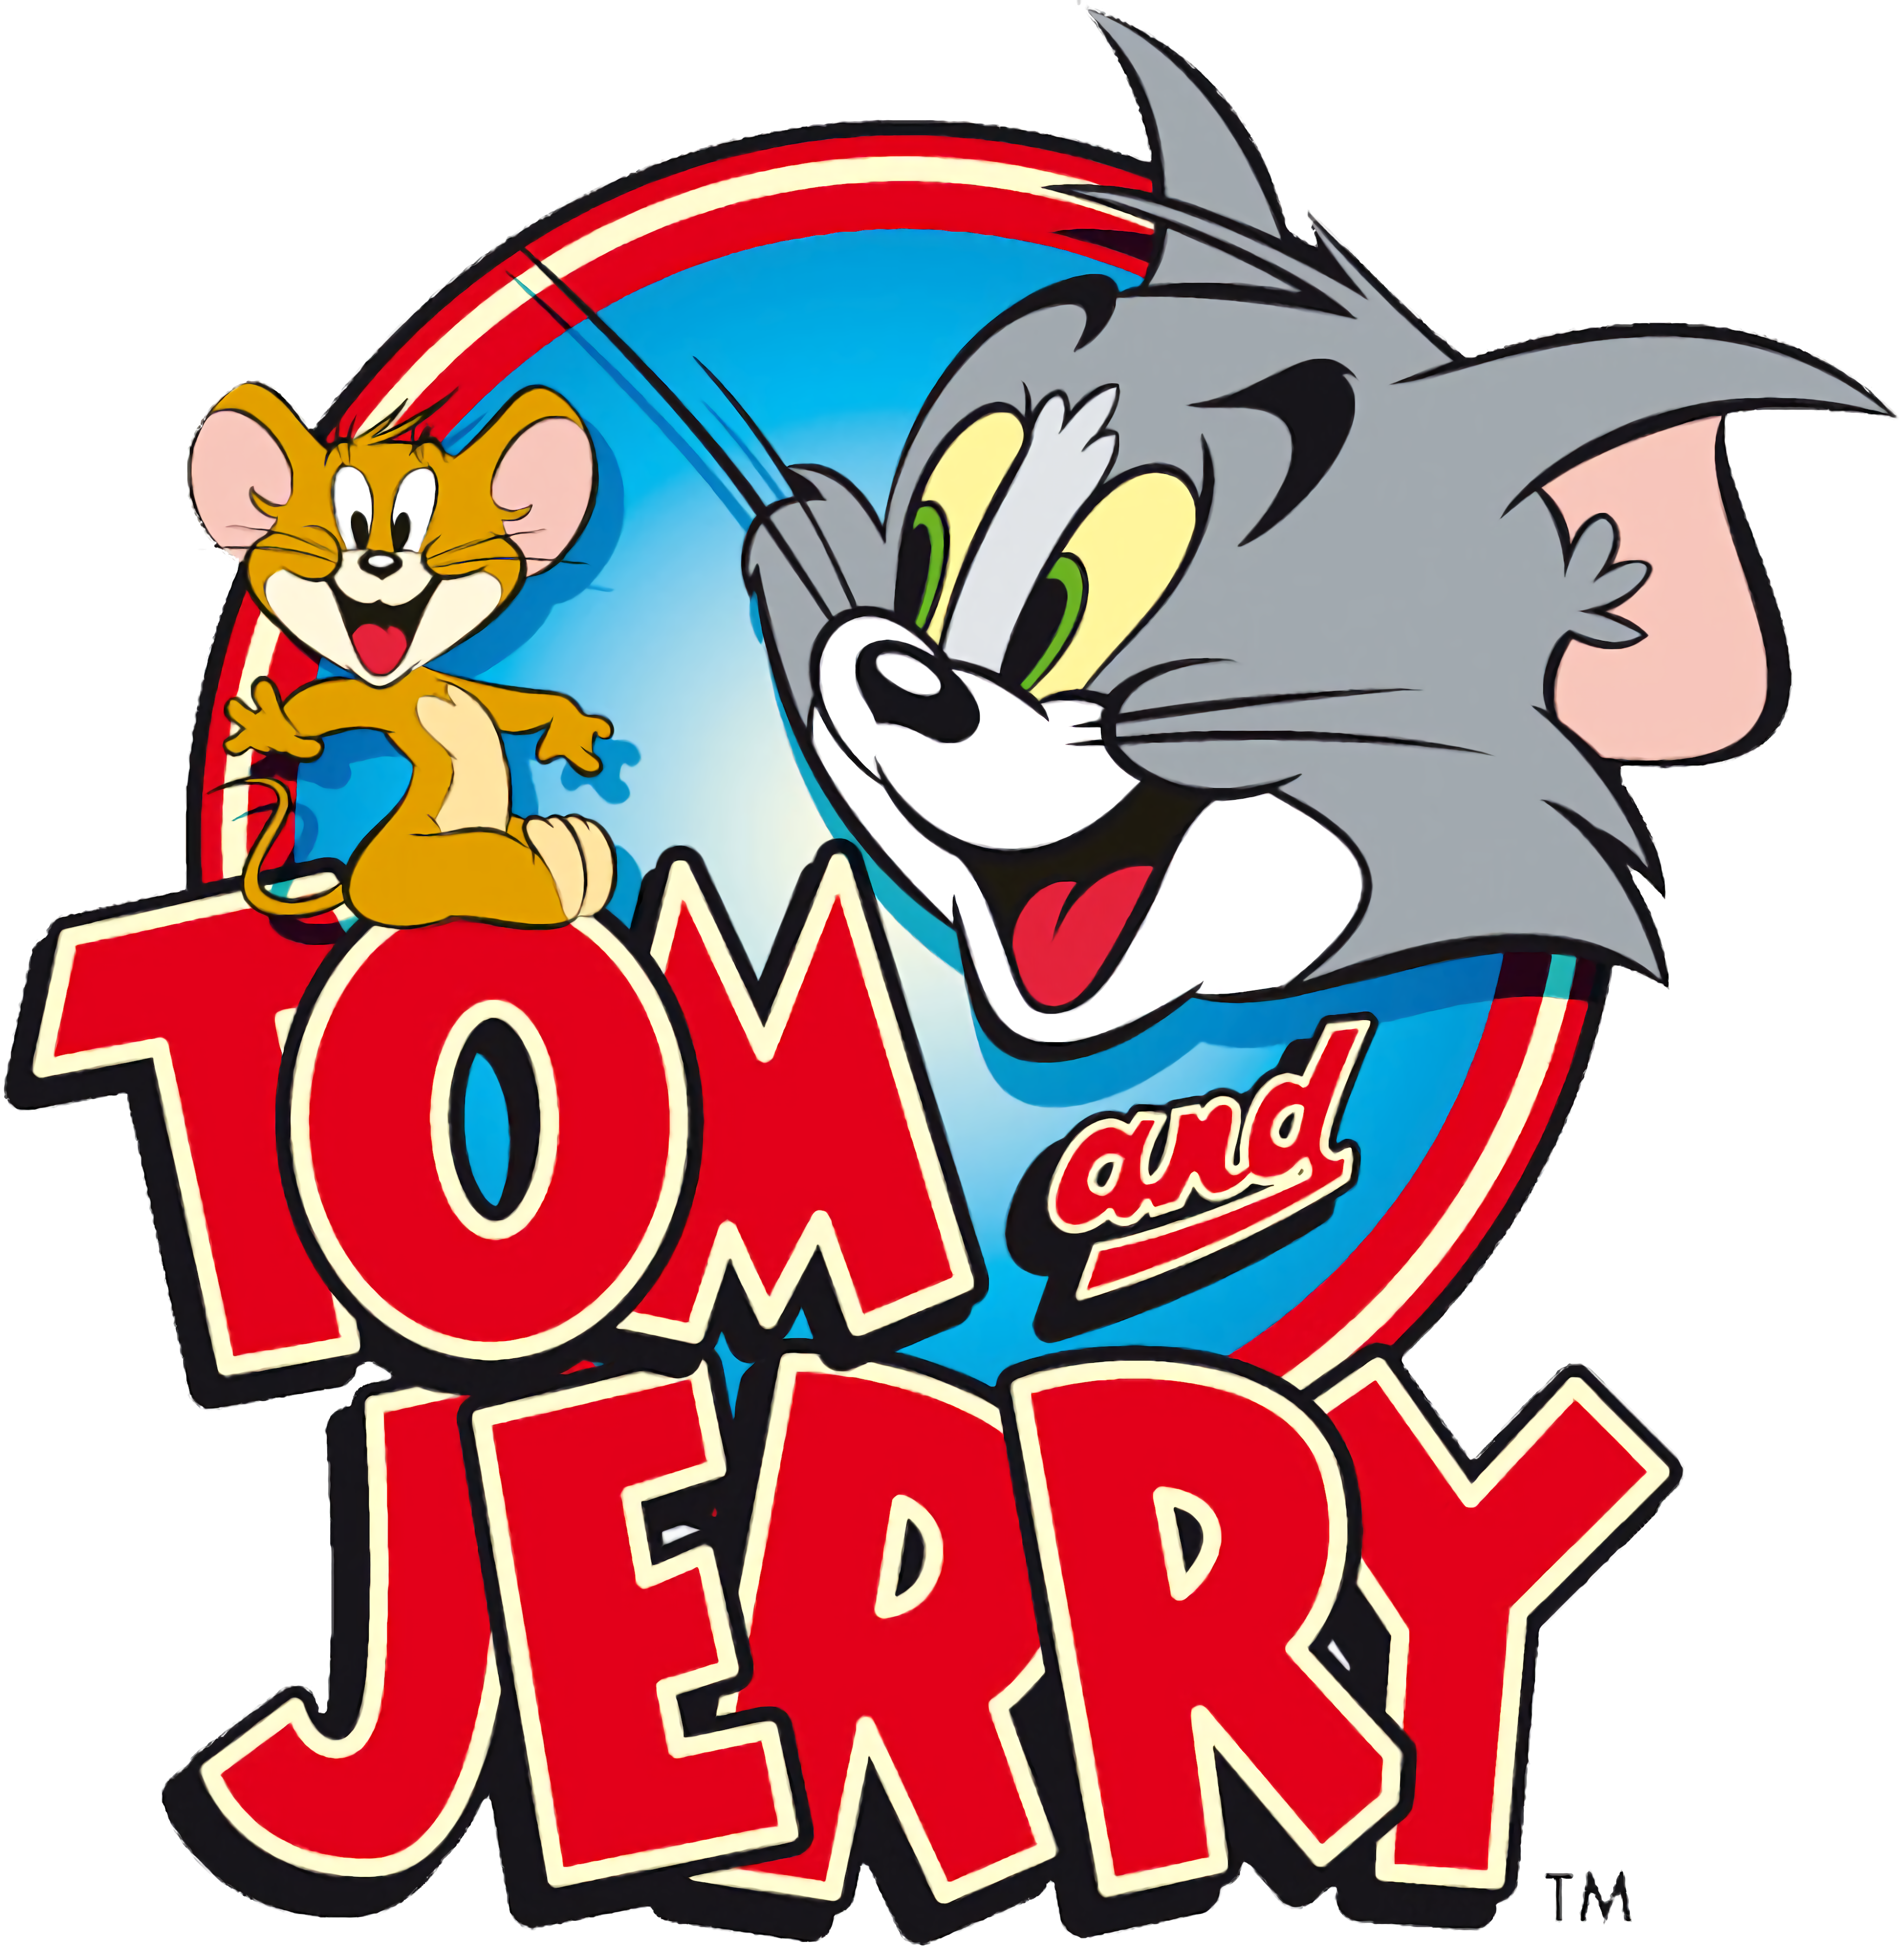 Tom og Jerry spil